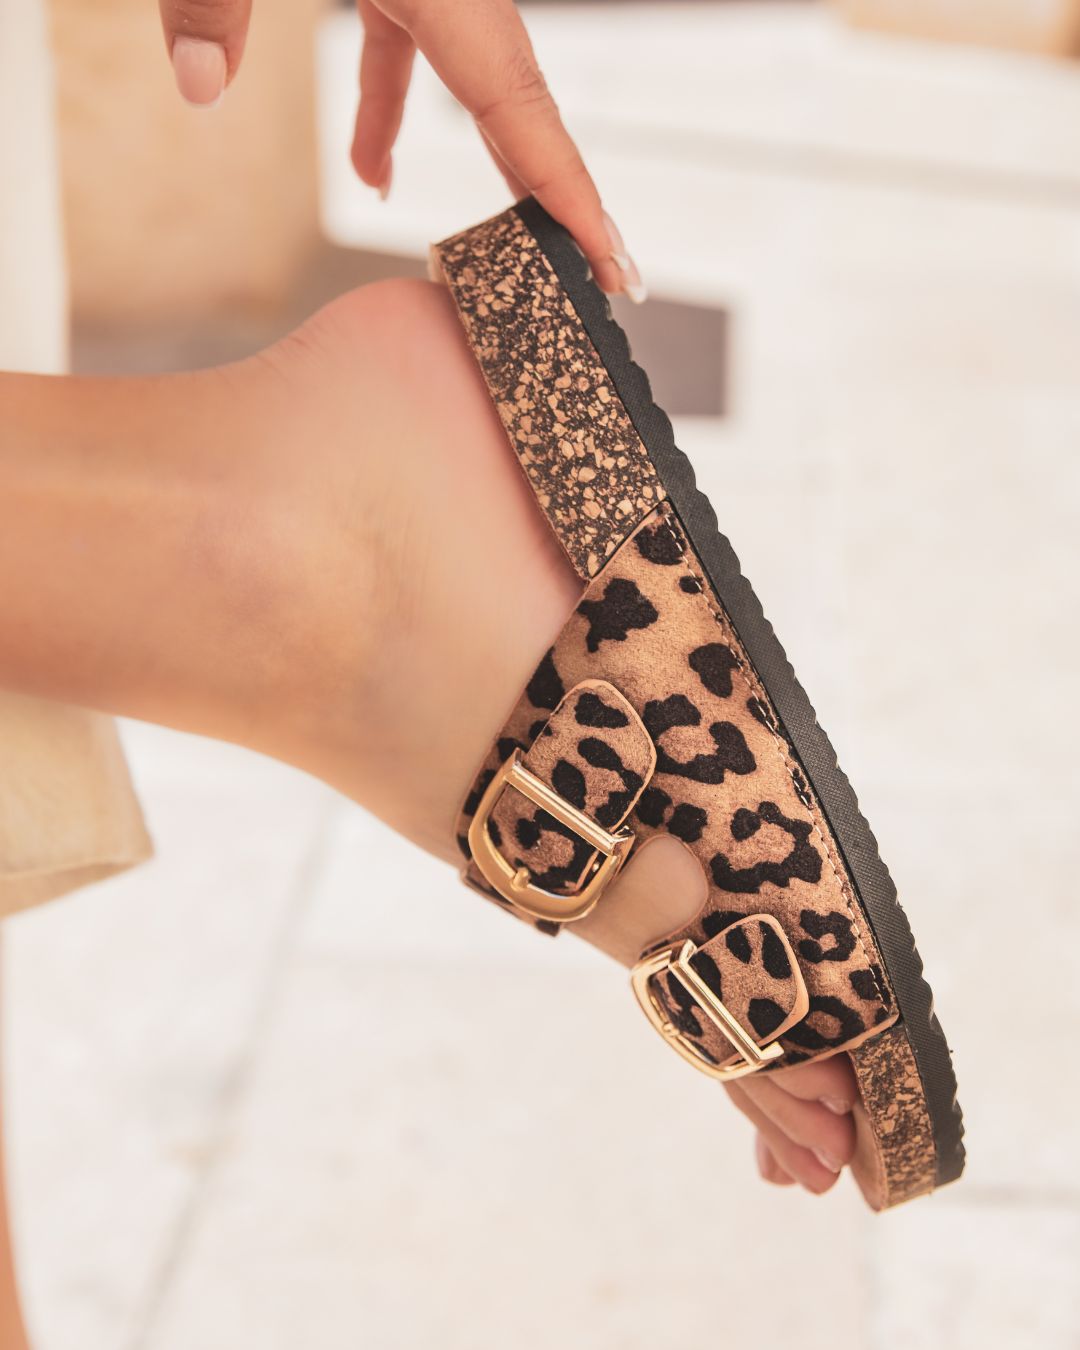 Sandale femme plate confort léopard - Noémie - Casualmode.fr